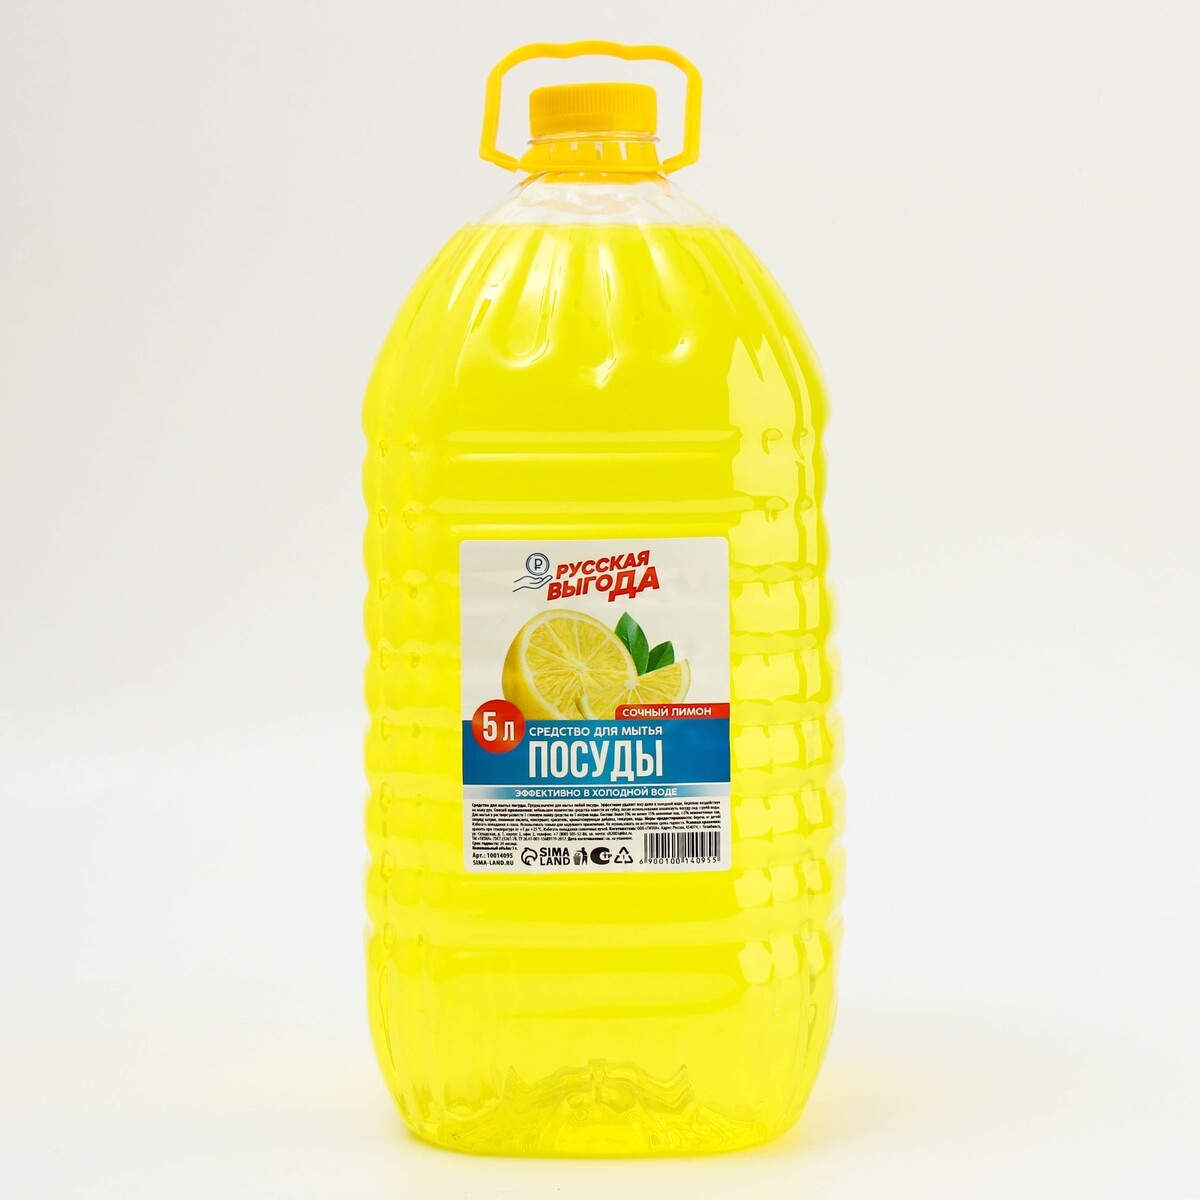 Средство для мытья посуды, аромат лимон, 5 л, русская выгода